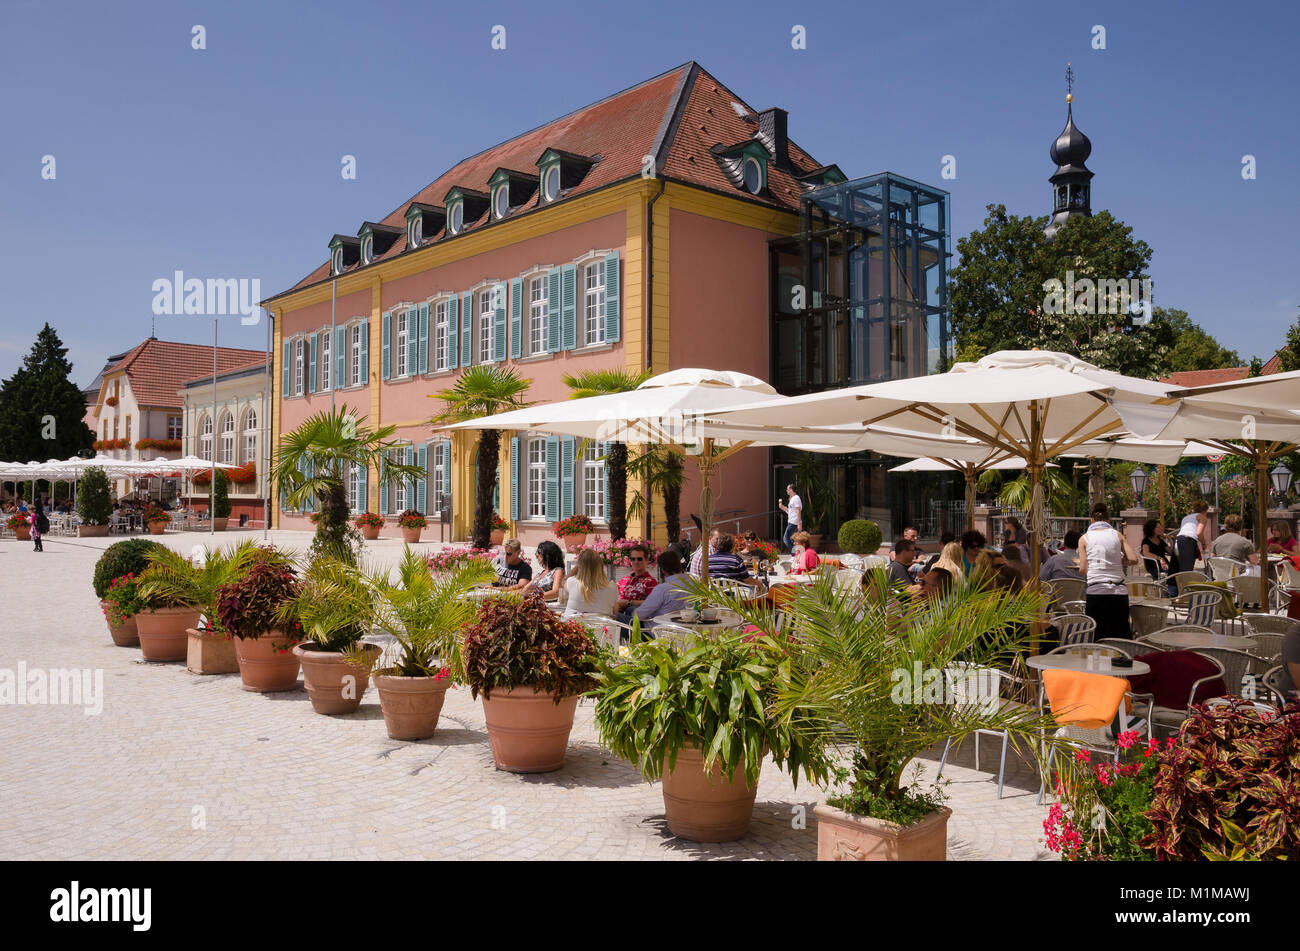 Cafe und Palais Hirsch, Schwetzingen, Baden-Wurttemberg, Germany, Europe Stock Photo